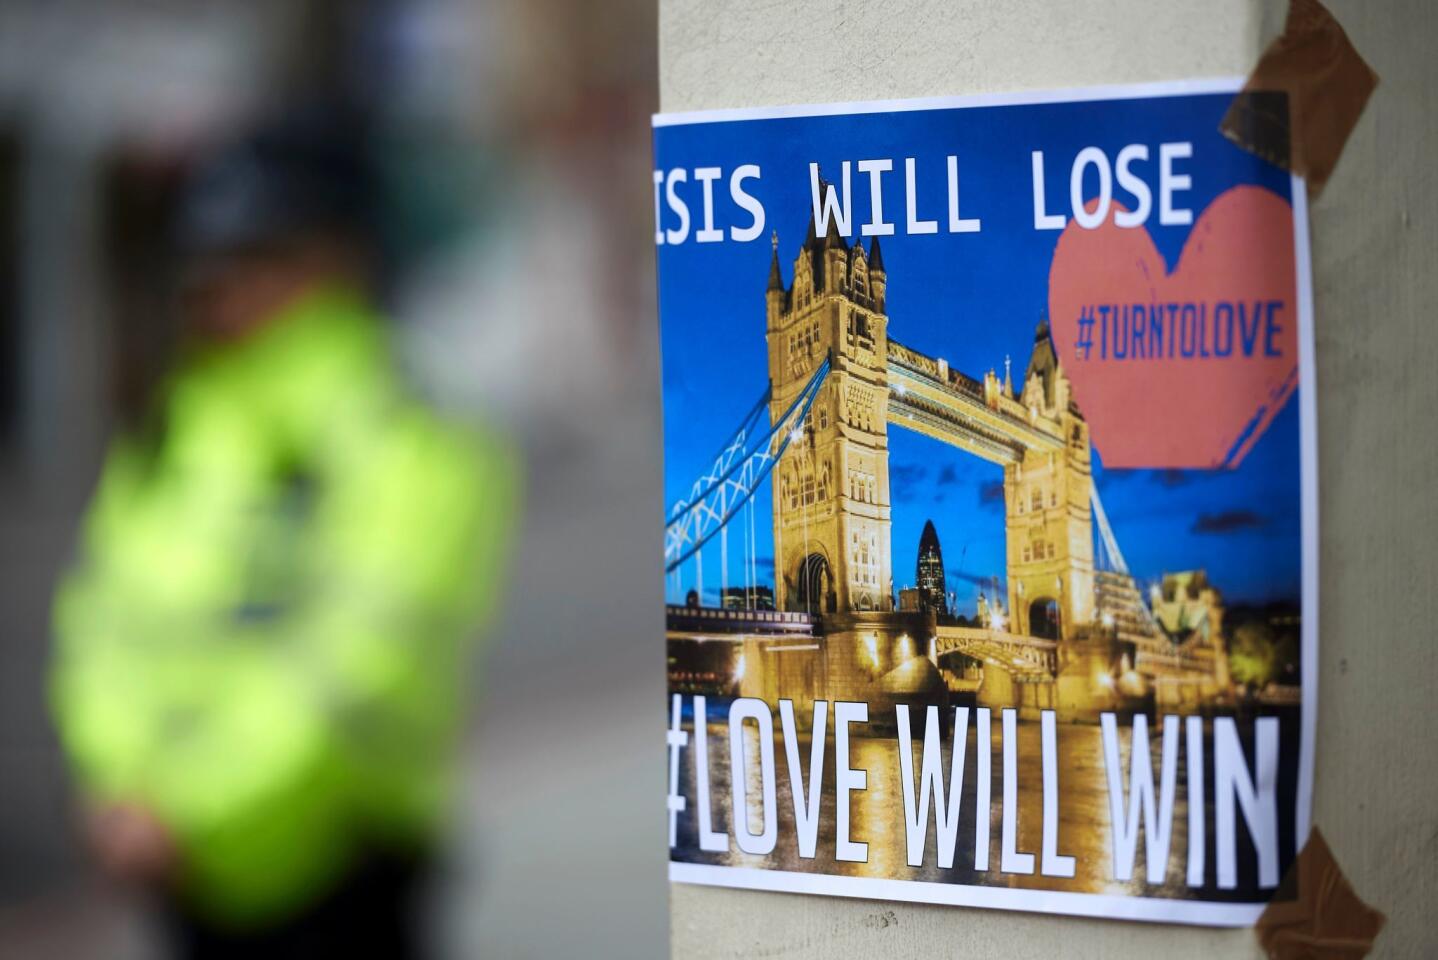 London terror attacks